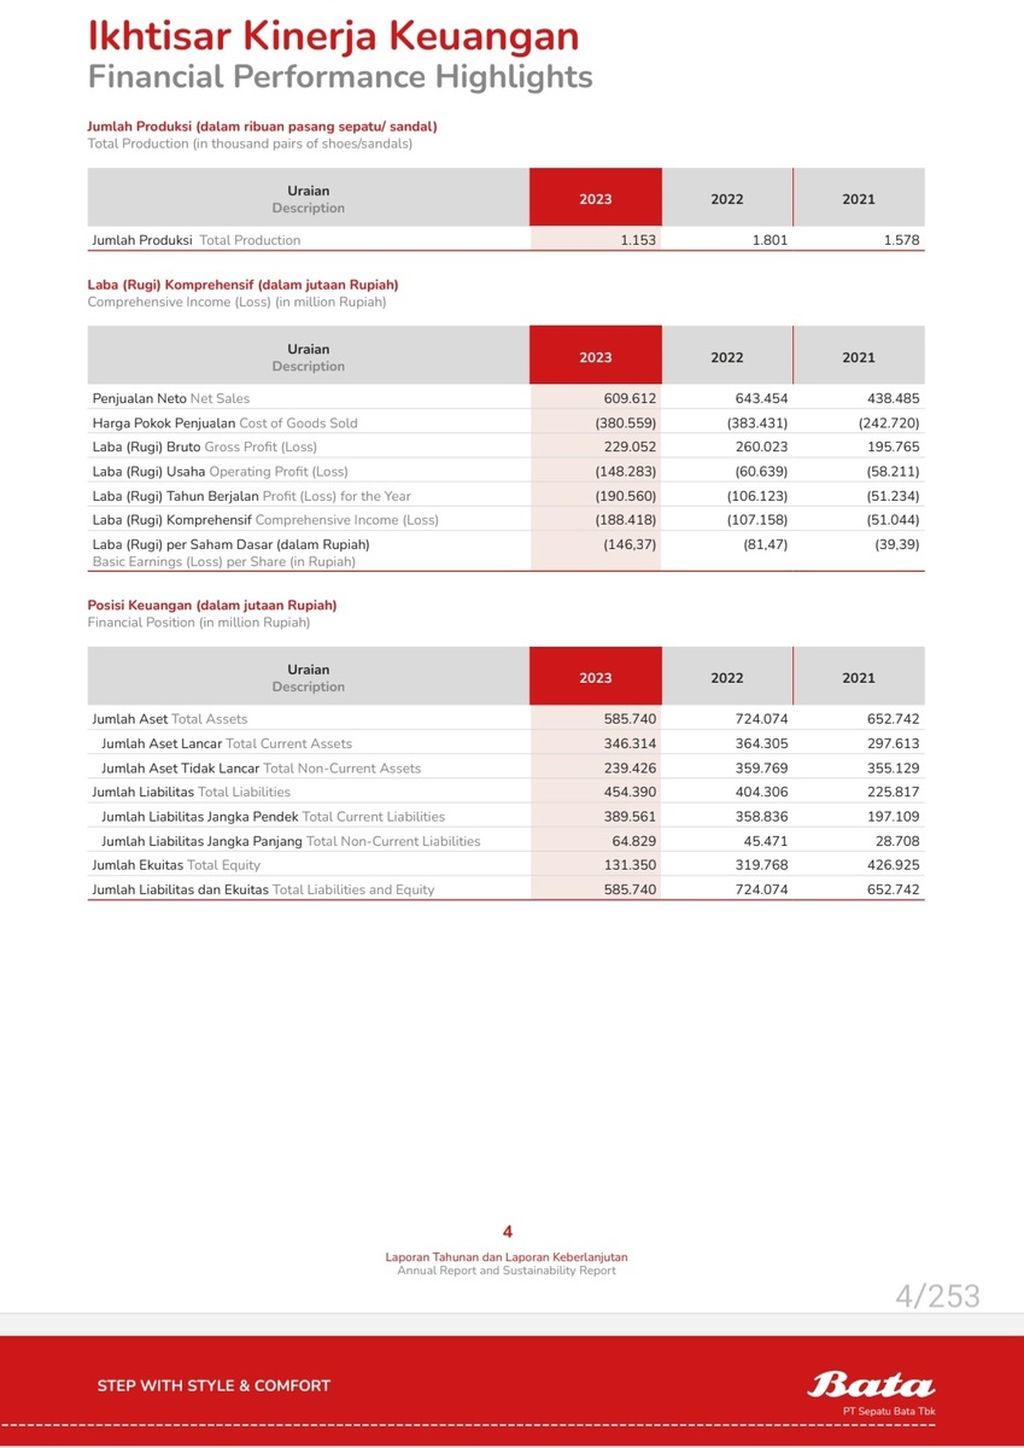 Bata Financial Highlights 2023. Source: Bata Annual Report 2023